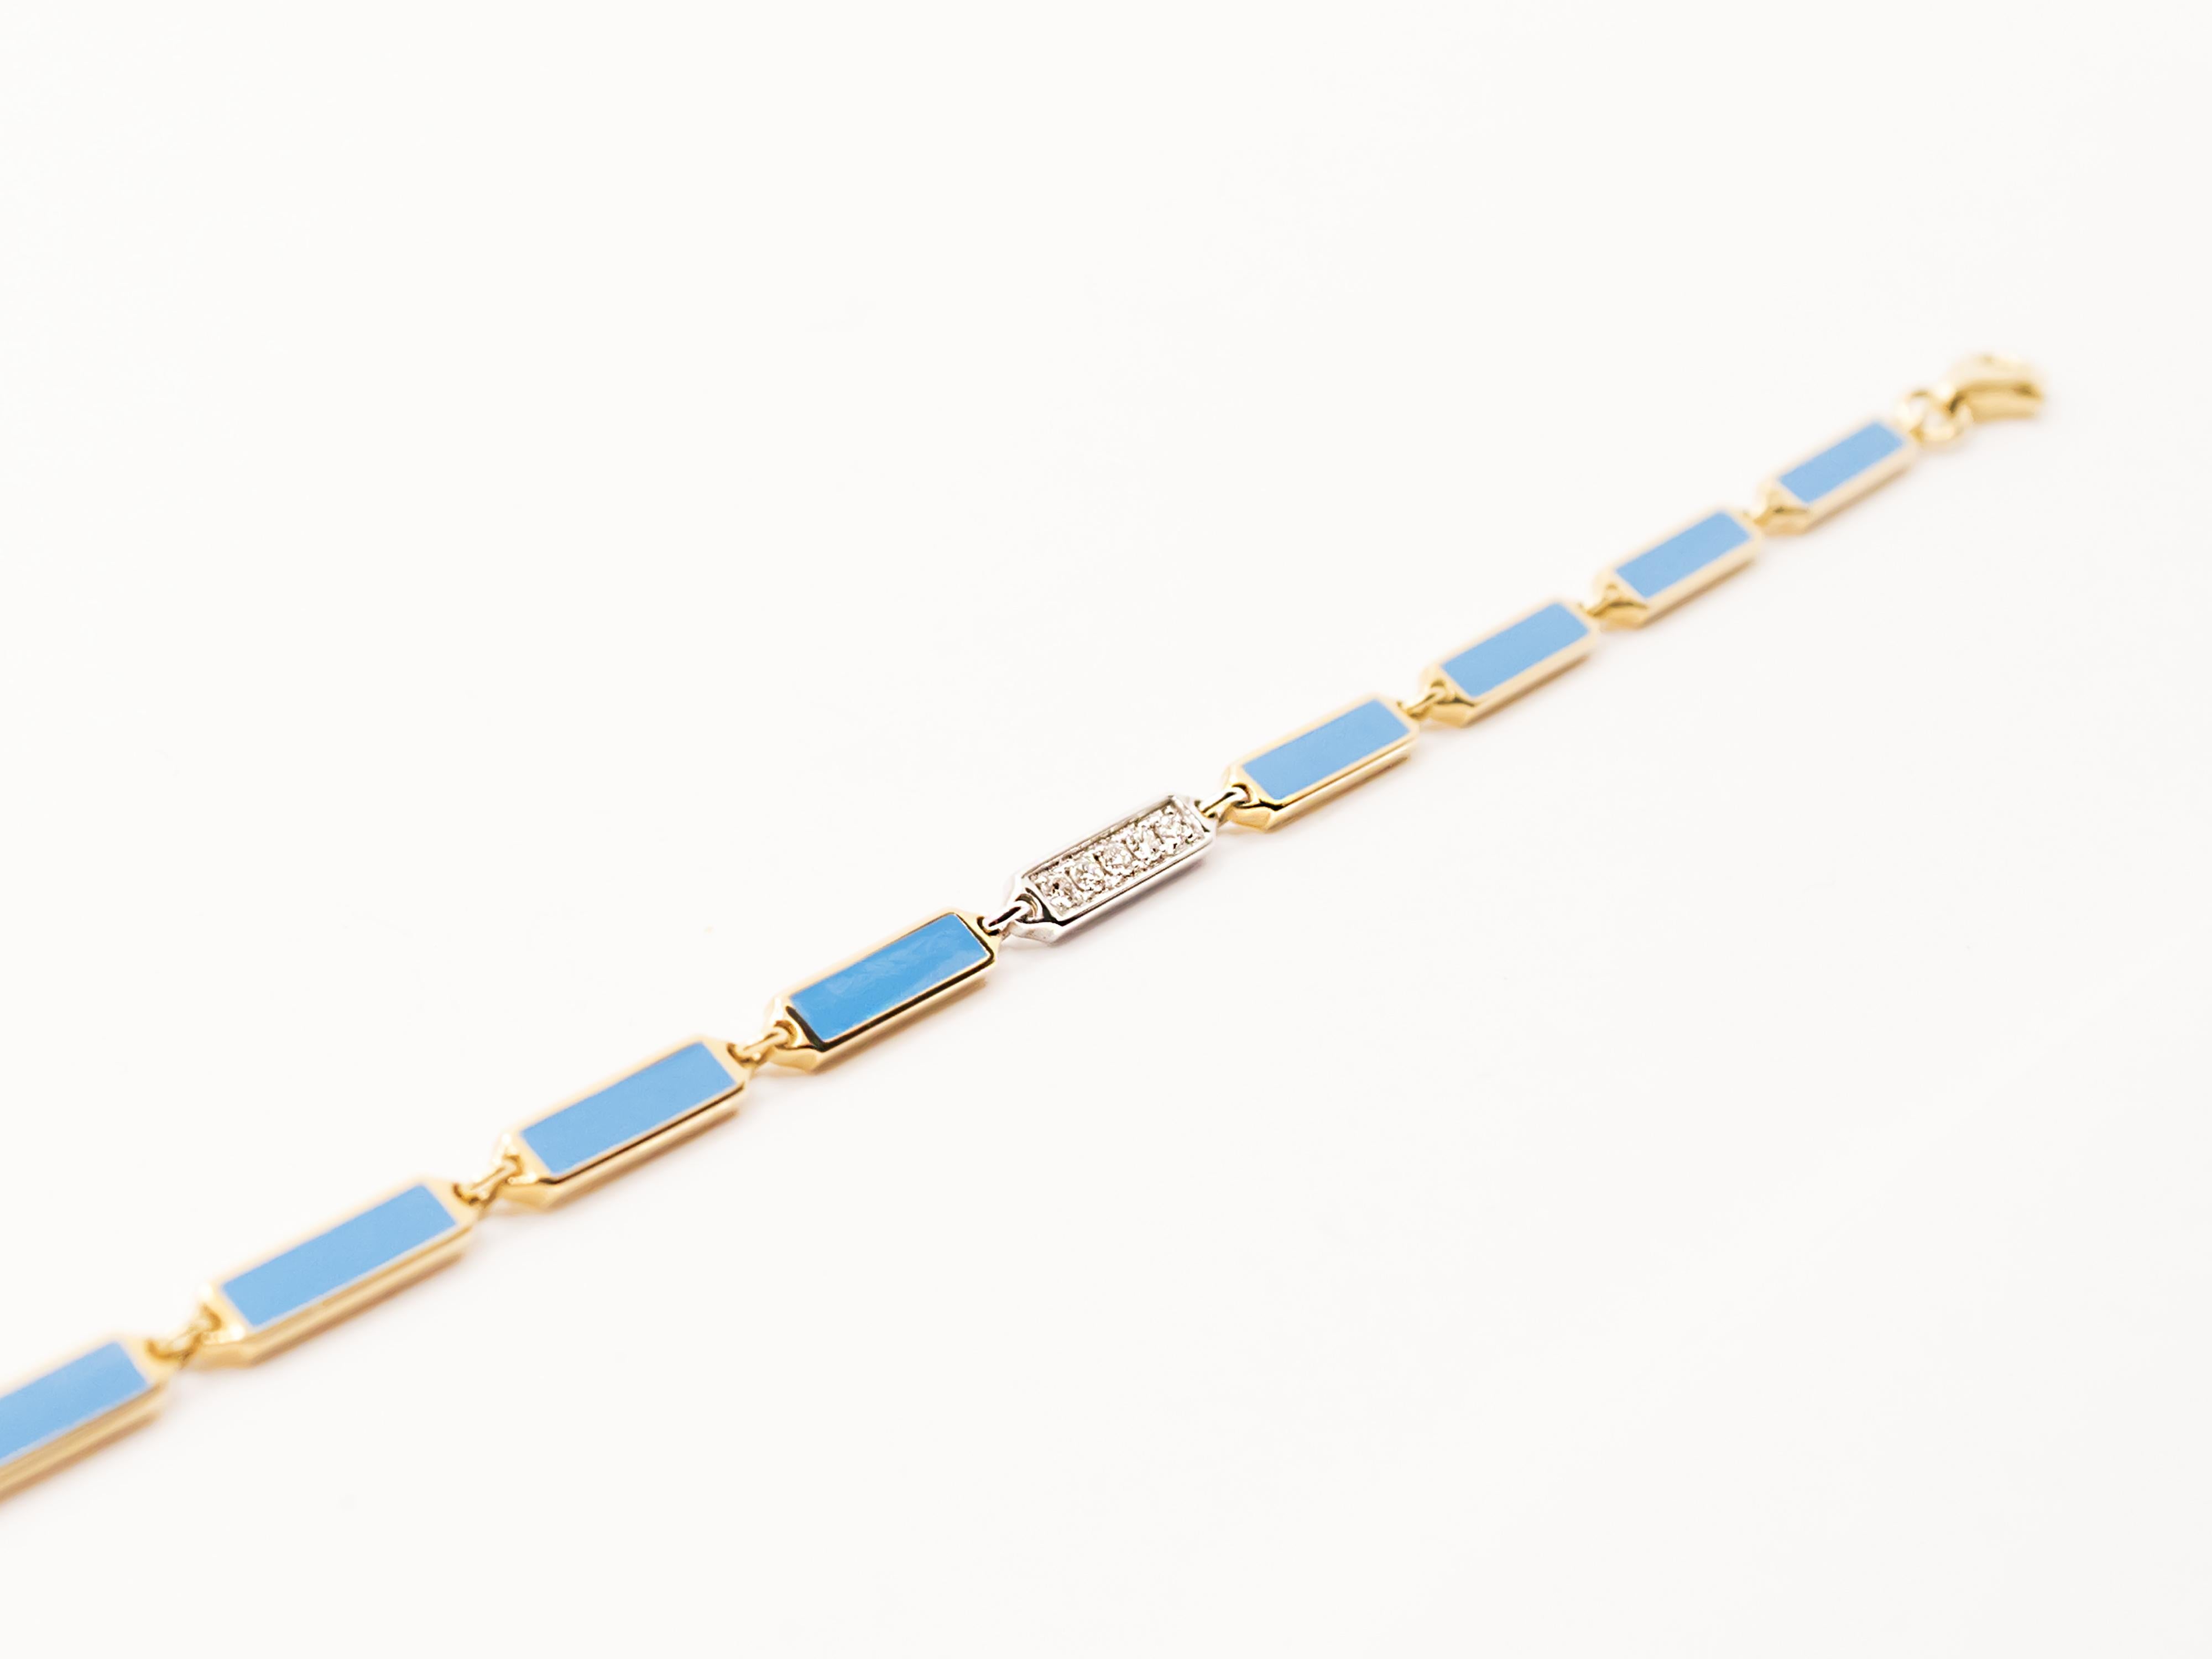 Un bracelet au style années 70 et à la fabrication italienne contemporaine.
Ce bracelet peut être porté aussi bien par les hommes que par les femmes.
Il est composé de modules hexagonaux. Chacun d'entre eux contient un rectangle d'émail turquoise.